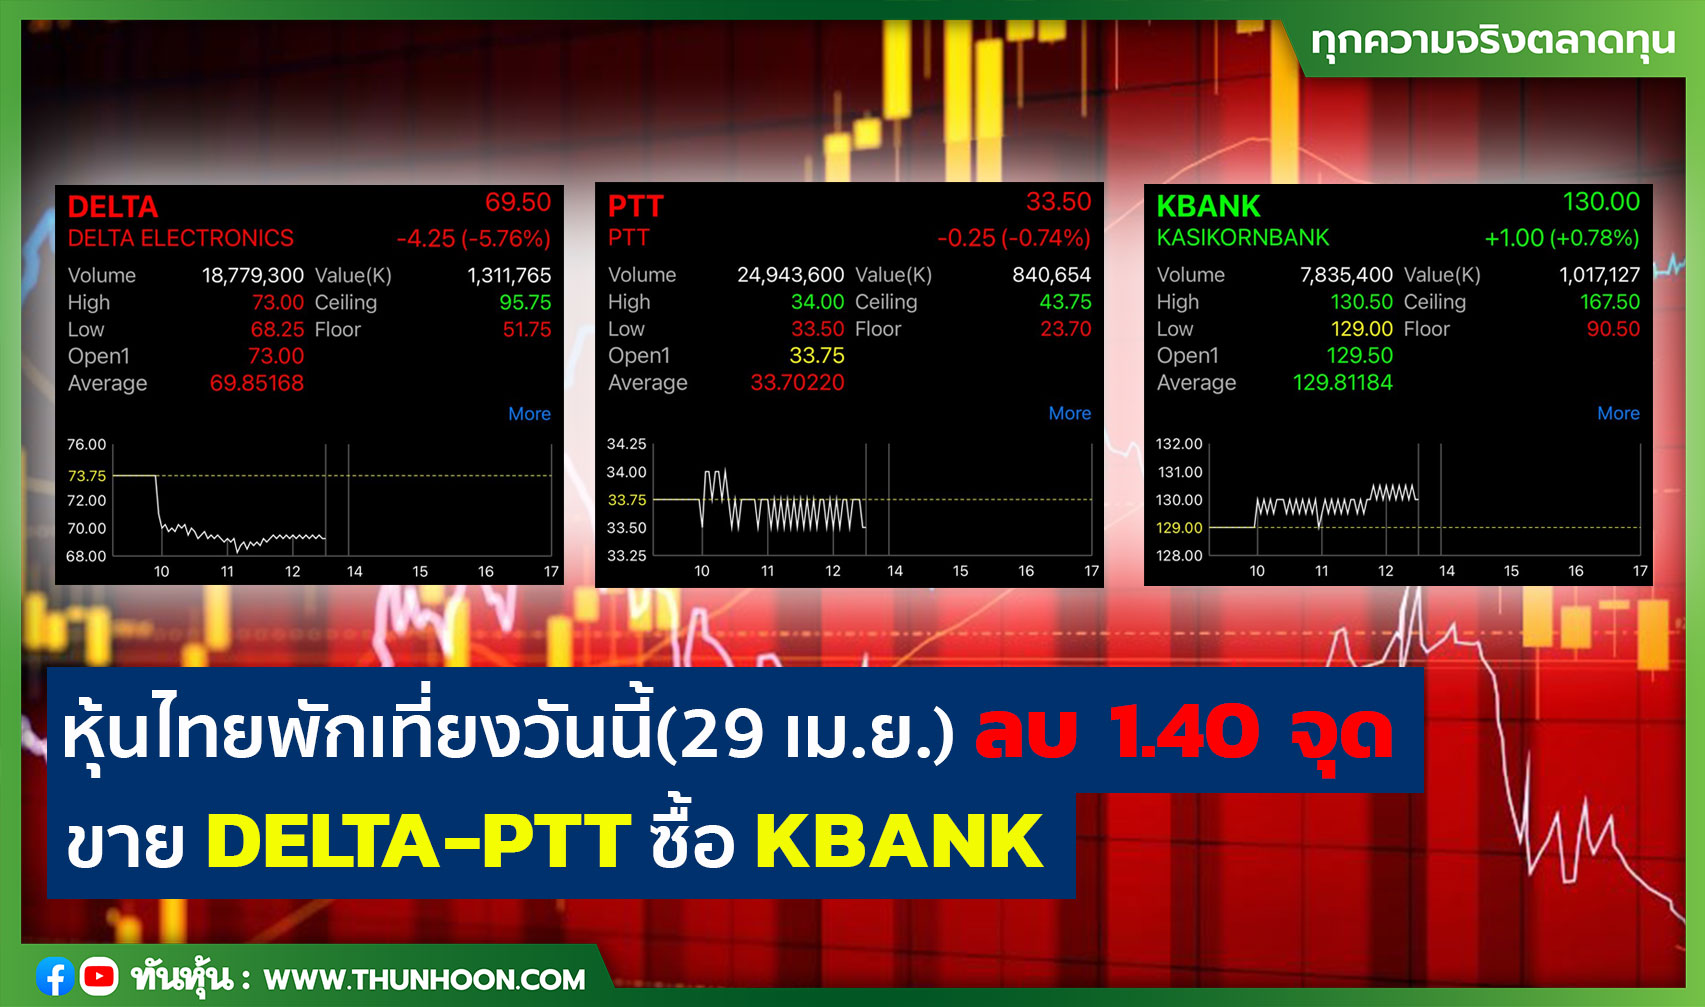 หุ้นไทยพักเที่ยงวันนี้(29 เม.ย.) ลบ 1.40 จุด ขาย DELTA-PTT ซื้อ KBANK